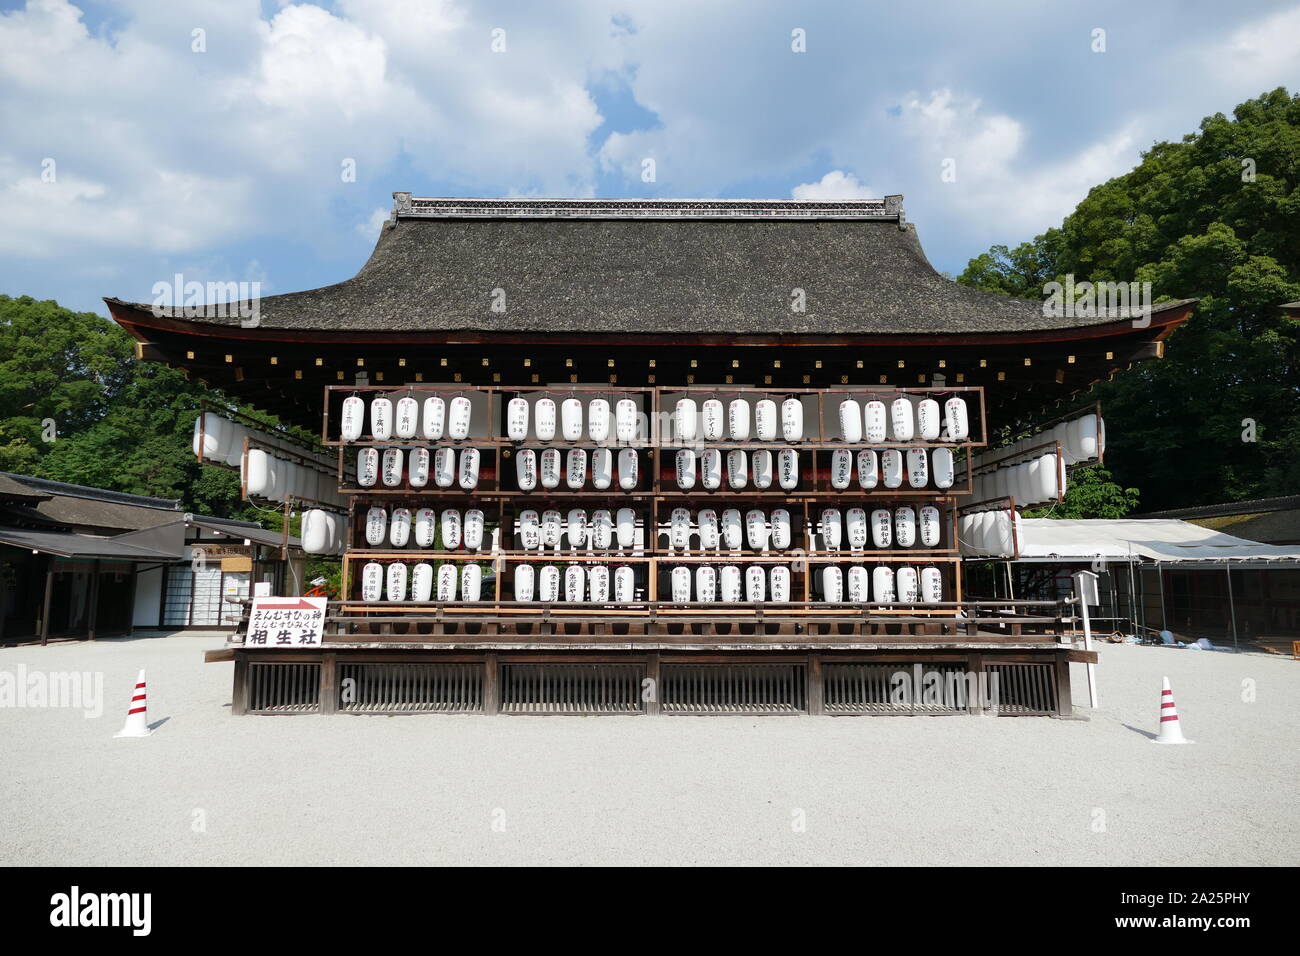 Santuario Shimogamo è un santuario shintoista a Kyoto. Il suo nome formale è Kamo-mioya-jinja. Si tratta di uno dei più antichi santuari Shintoisti in Giappone ed è uno dei diciassette monumenti storici di antiche di Kyoto che sono stati designati dall'UNESCO come Sito del Patrimonio Mondiale. Foto Stock